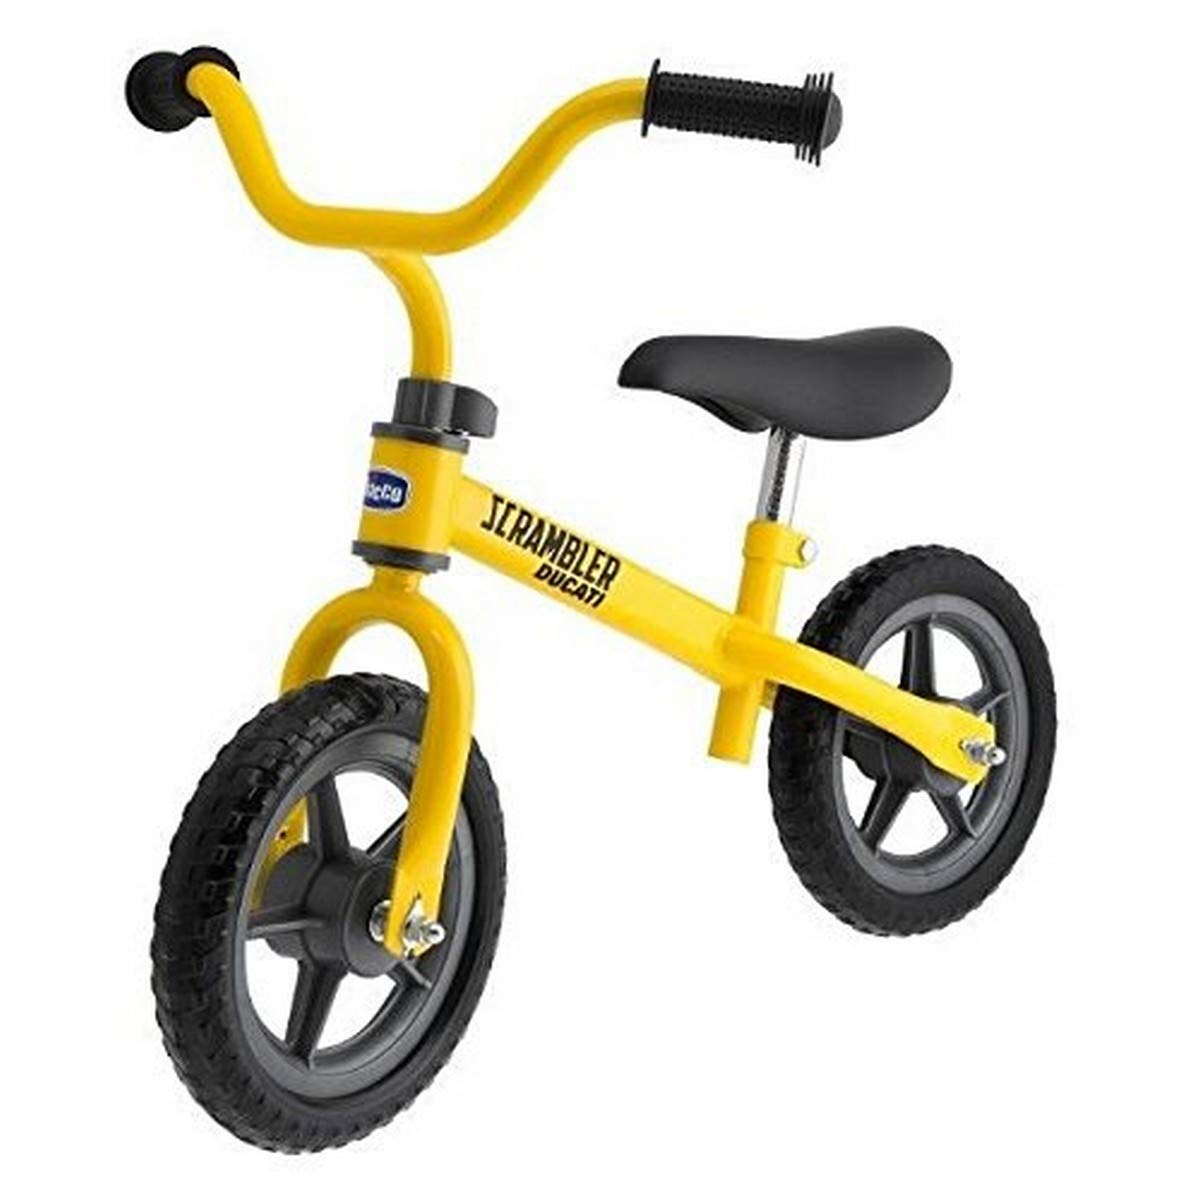 Chicco Ducati Scrambler Laufrad für Kinder von 2-5 Jahren, Kinderfahrrad ohne Pedale zum Ausbalancieren für Jungen und Mädchen, verstellbarer Sitz und Lenker, Max 25 kg, Kinderspielzeug 2-5 Jahre